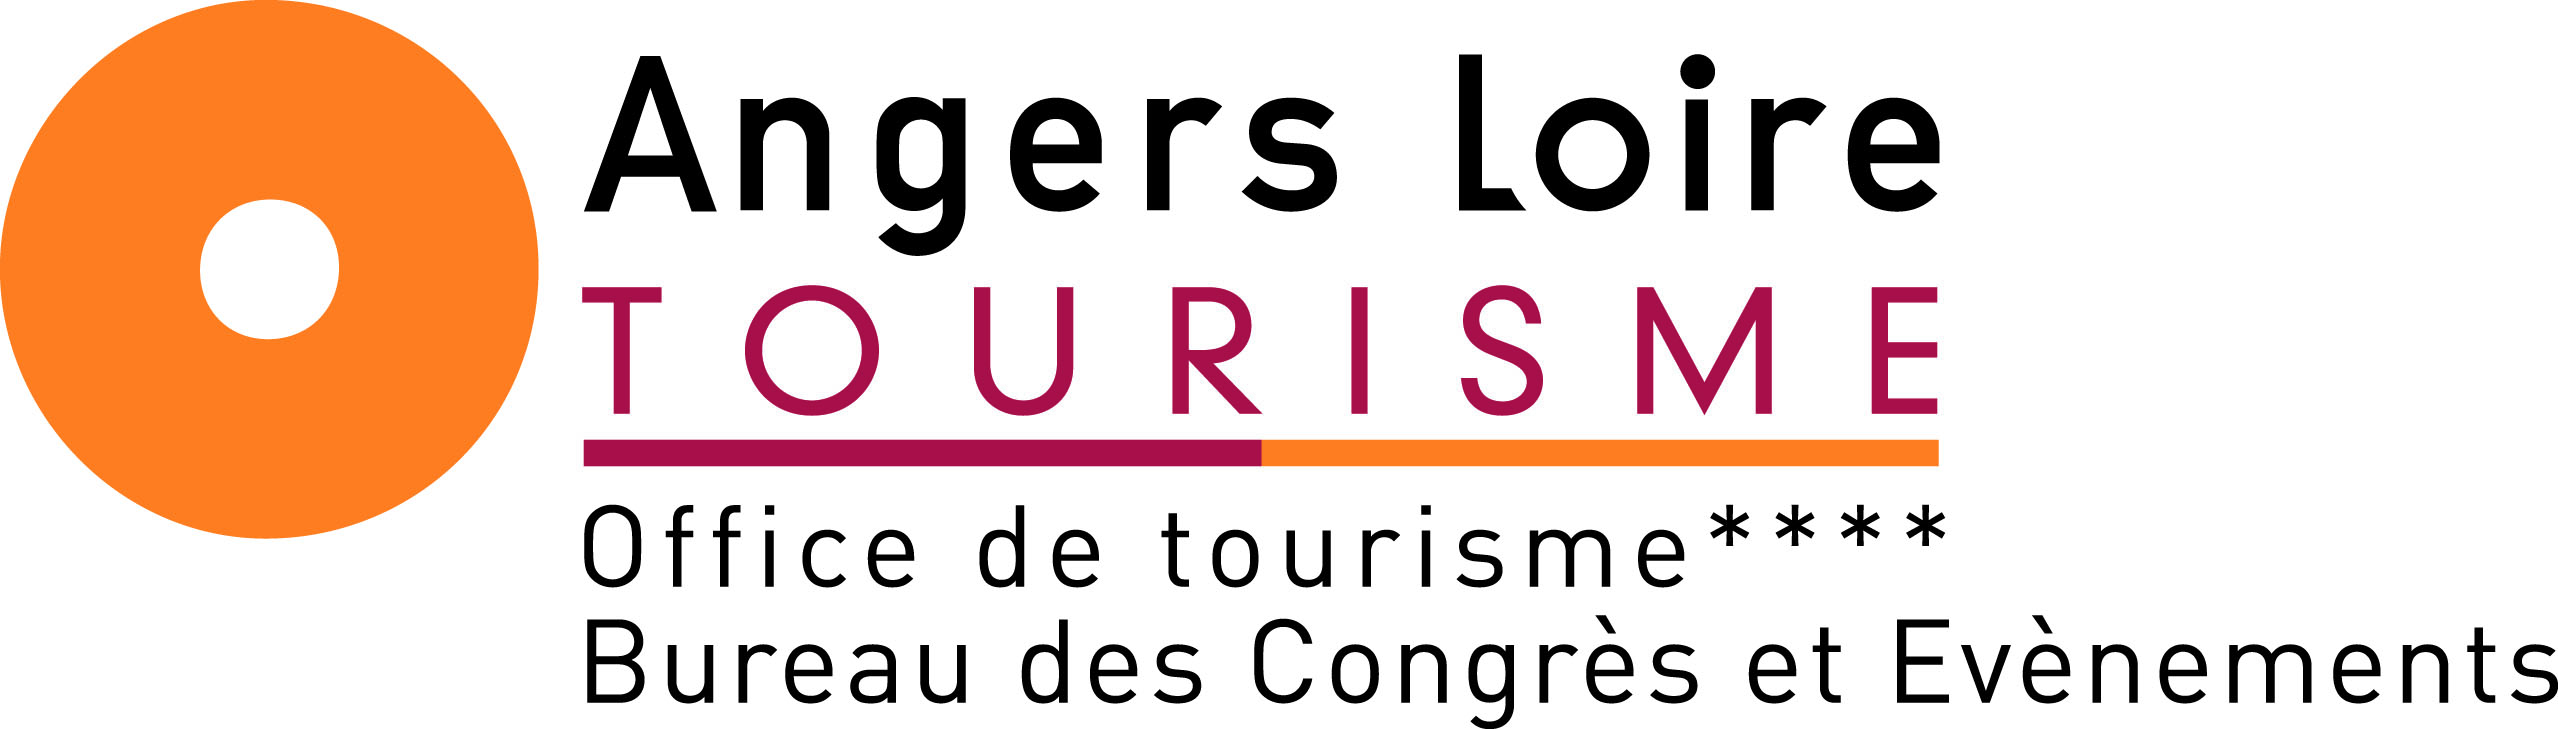 Angers Loire Tourisme